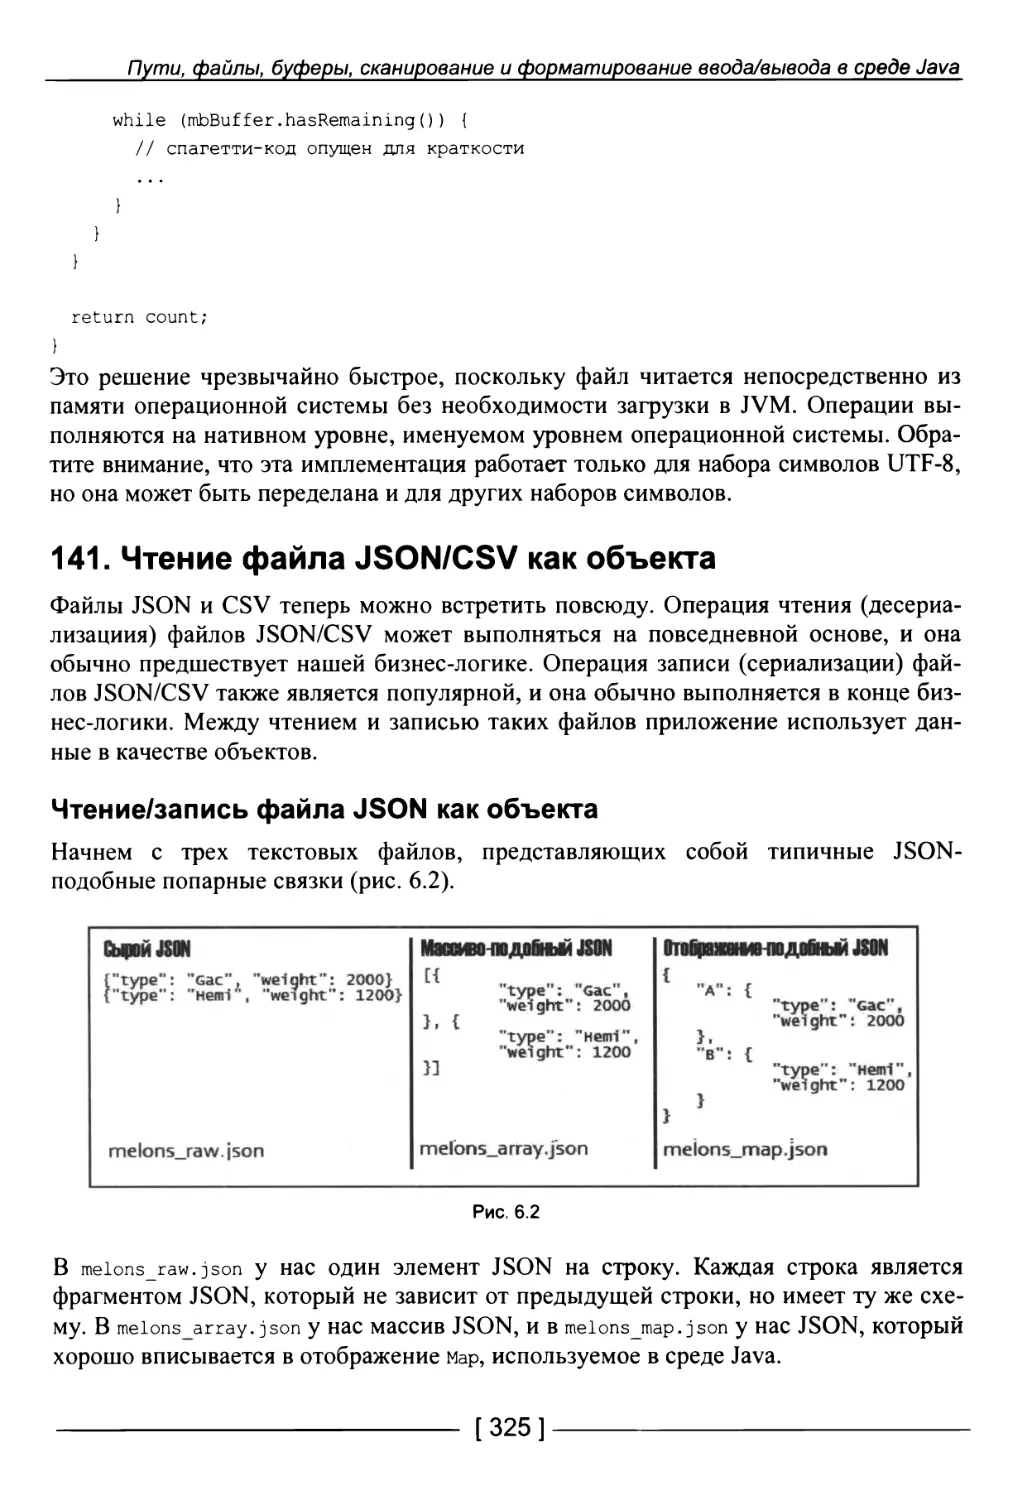 141. Чтение файла JSON/CSV как объекта